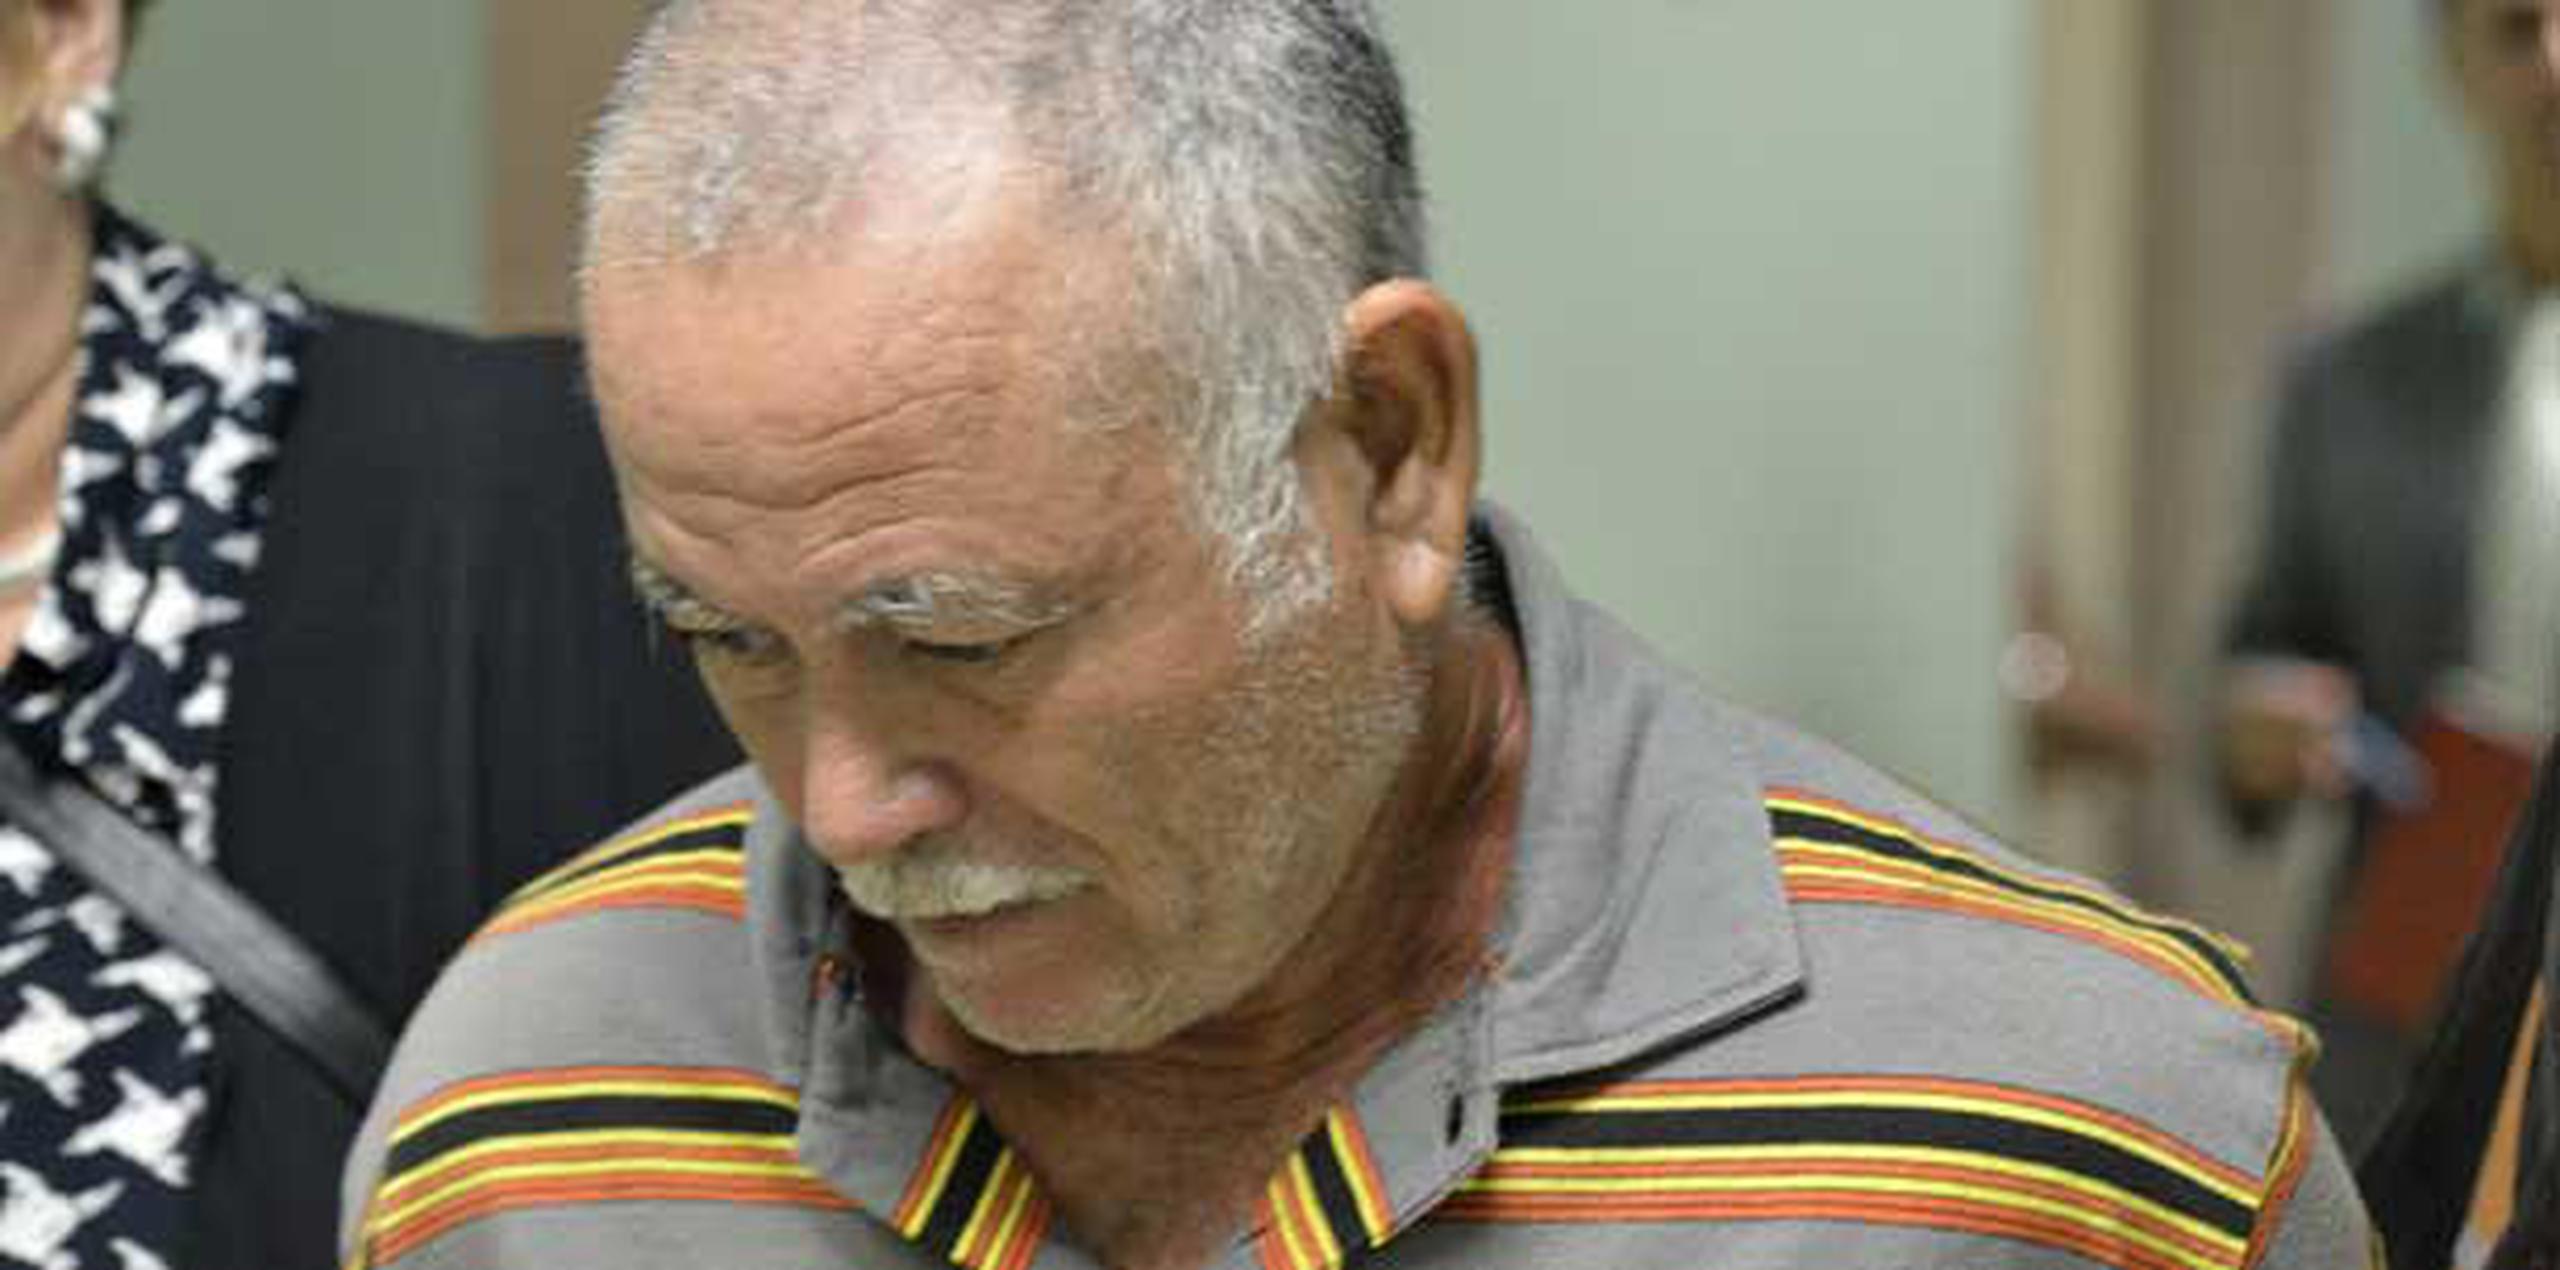 Manuel Natal Bracetti enfrenta cargos estatales por agresión sexual contra su nieta por hechos ocurridos entre 2009 y septiembre de 2011, cuando la menor tenía entre 12 y 14 años. (Archivo)